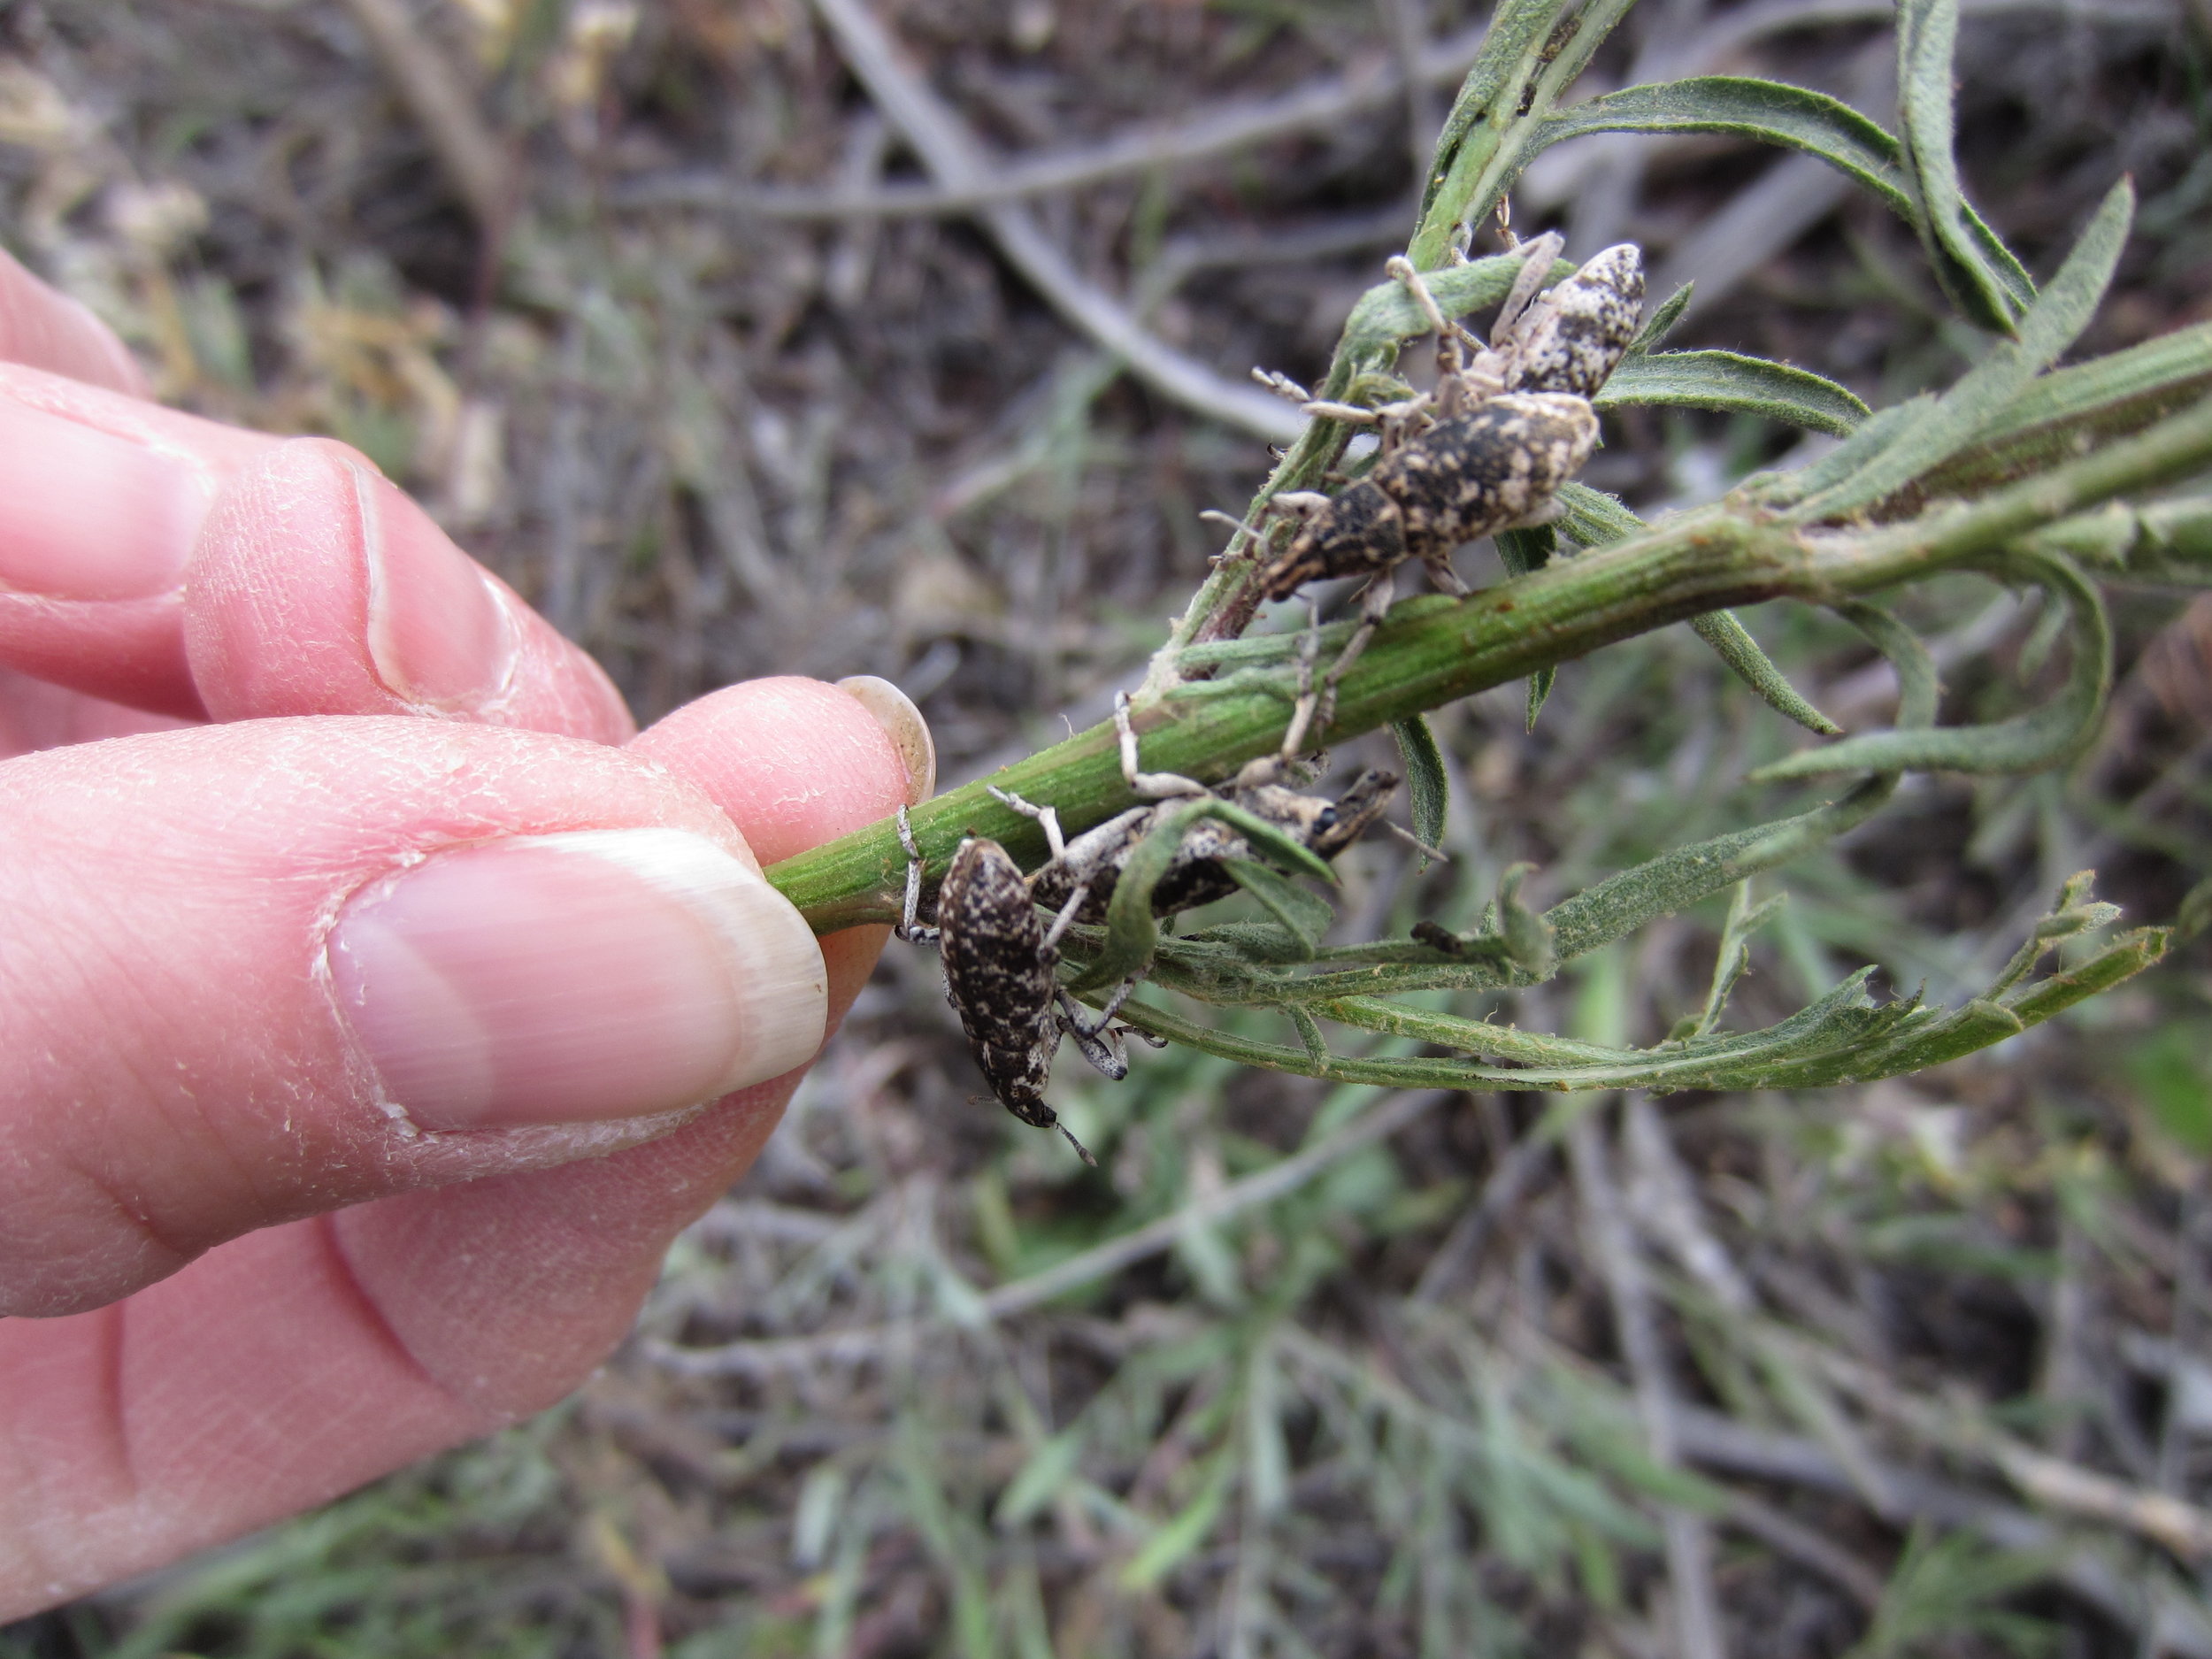 Knapweed root-boring weevils